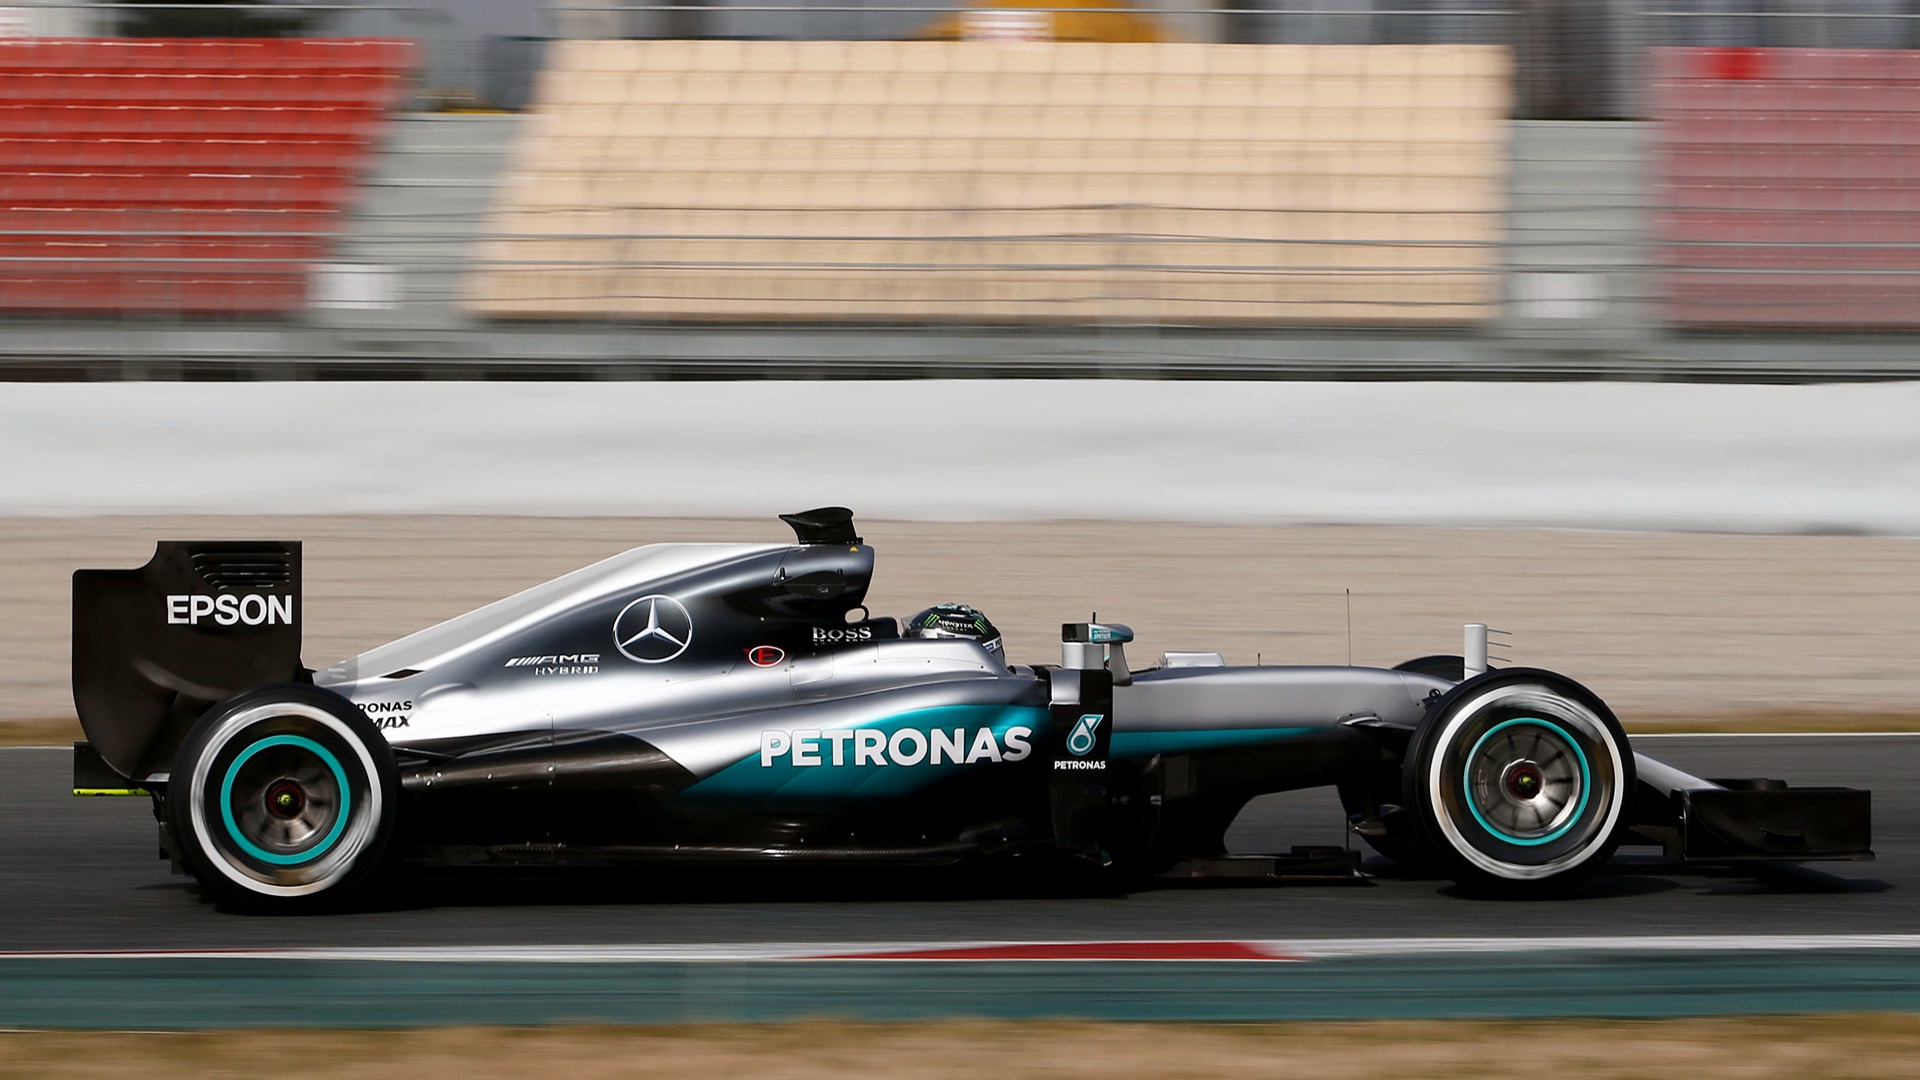 2016 Mercedes-AMG Petronas W07 Formula 1 car